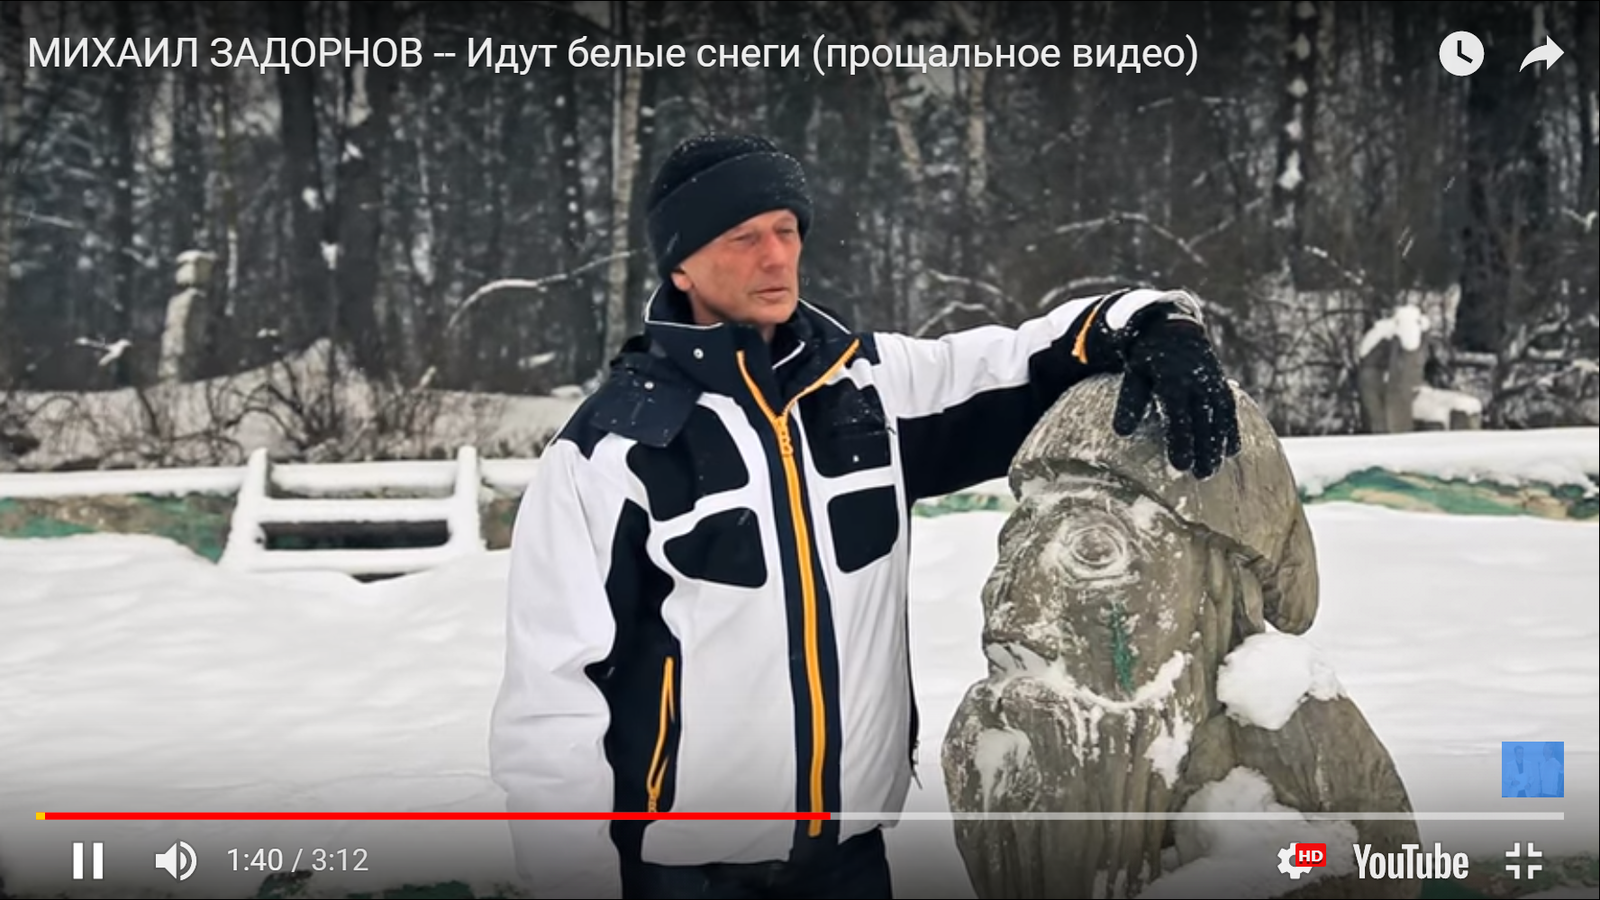 White snows are coming. A friend of Zadornov showed a farewell video about the artist - Mikhail Zadornov, Idols, Legend, Pride, Longpost, Russia